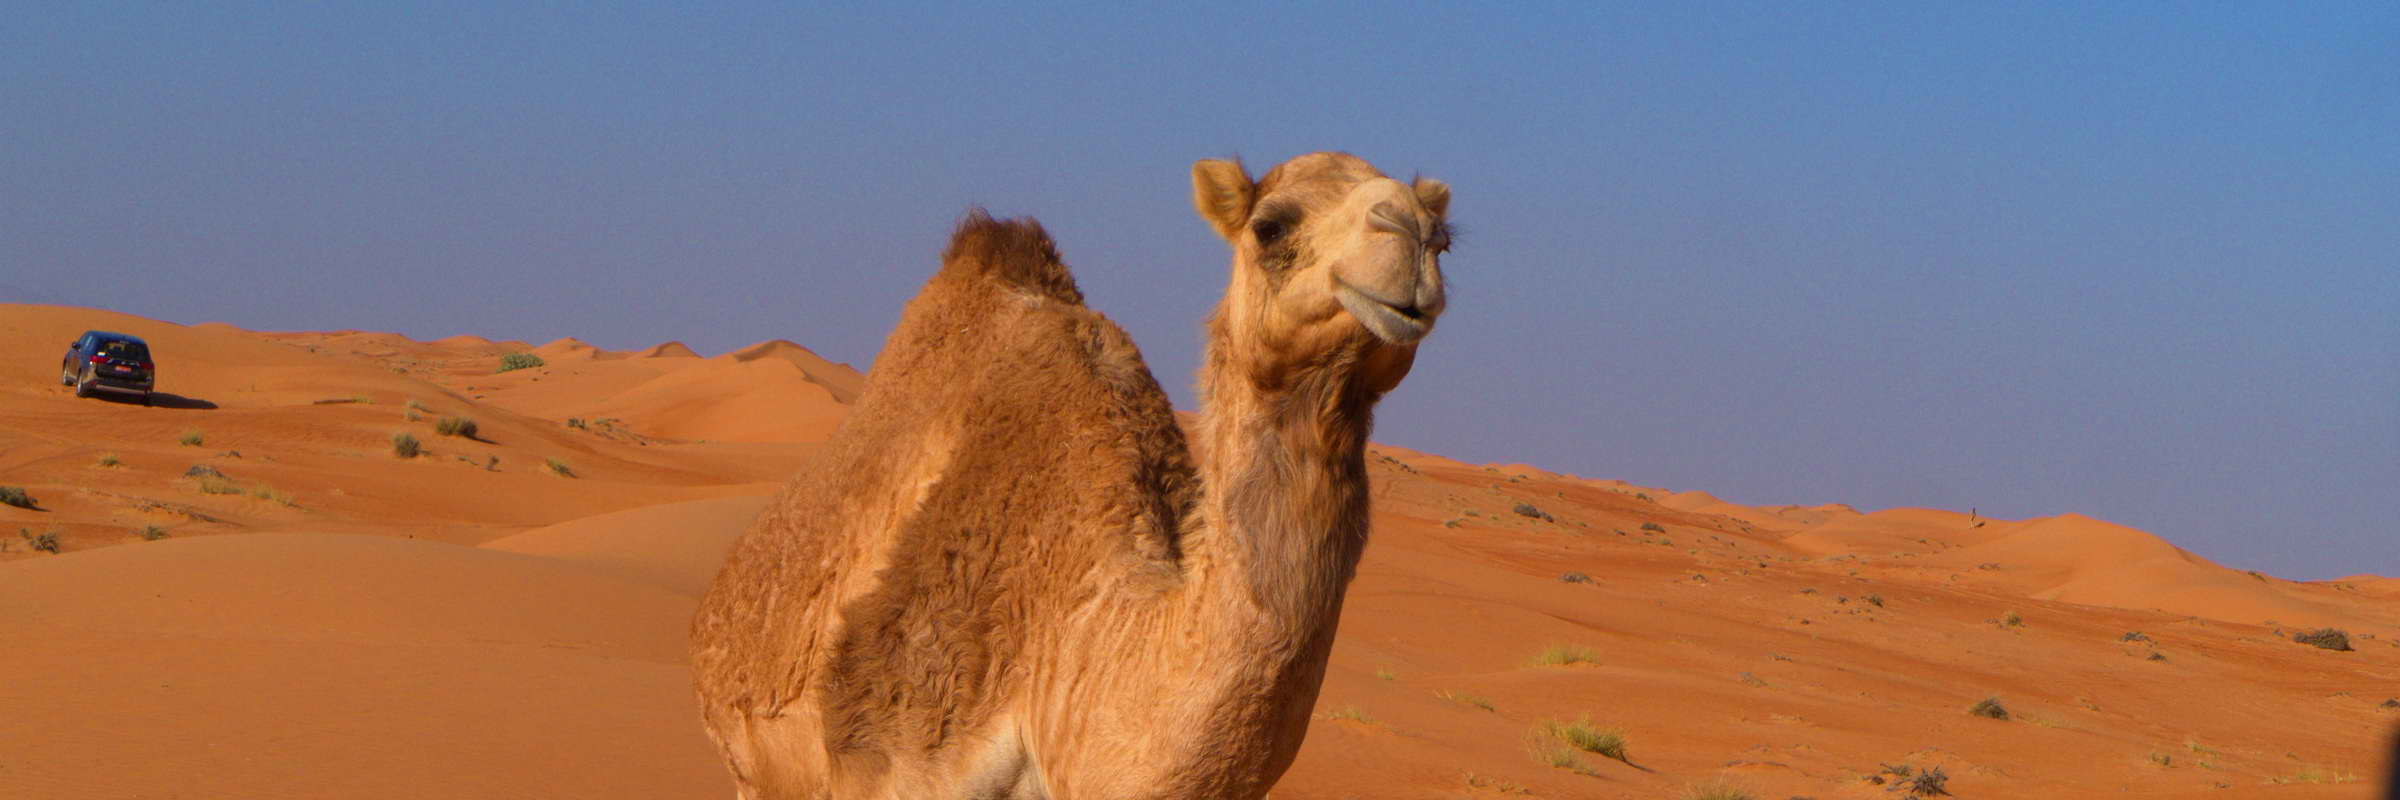 Kamele gehören zu einem Wüstenerlebnis einfach dazu. Im Oman gibt es zwar keine wilden Kamele, einige Besitzer lassen ihre Kamele jedoch frei in der Wüste laufen.